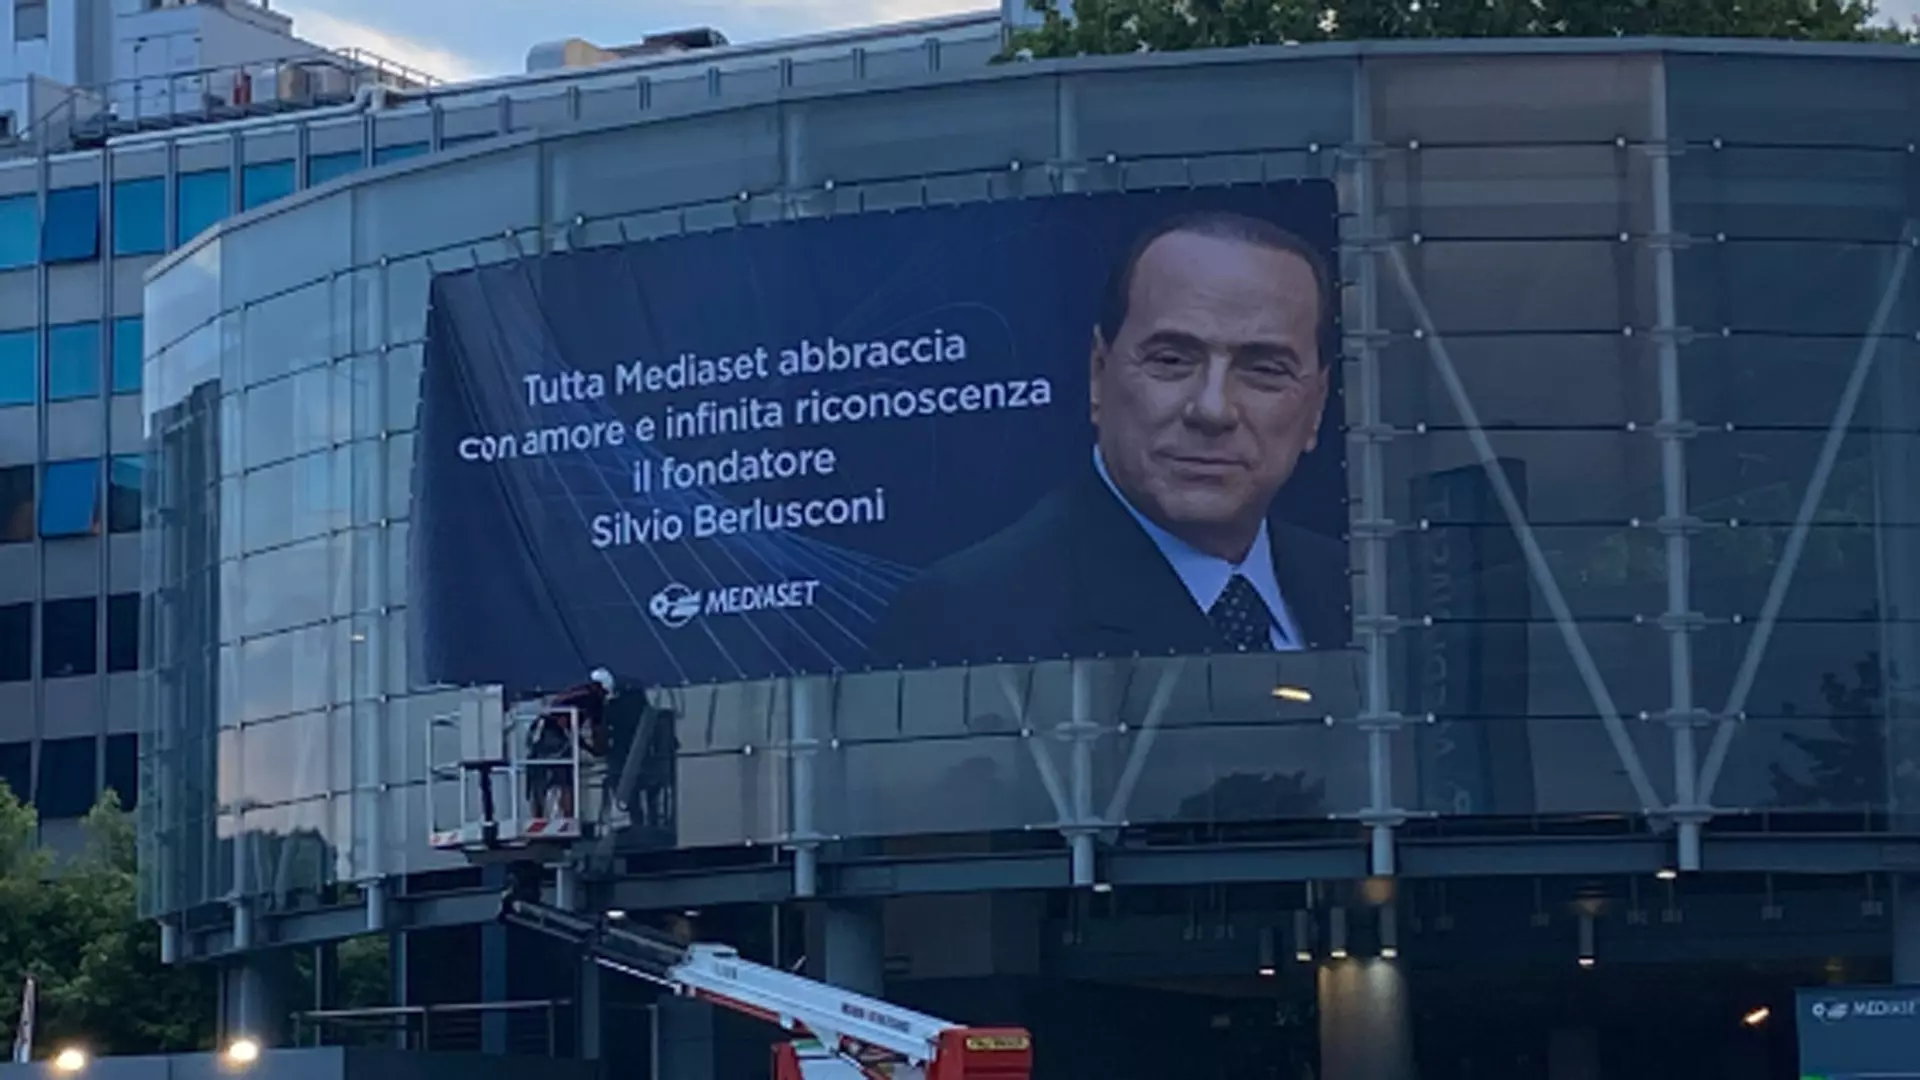 Mediaset abbraccia Silvio Berlusconi con “amore e infinita riconoscenza”